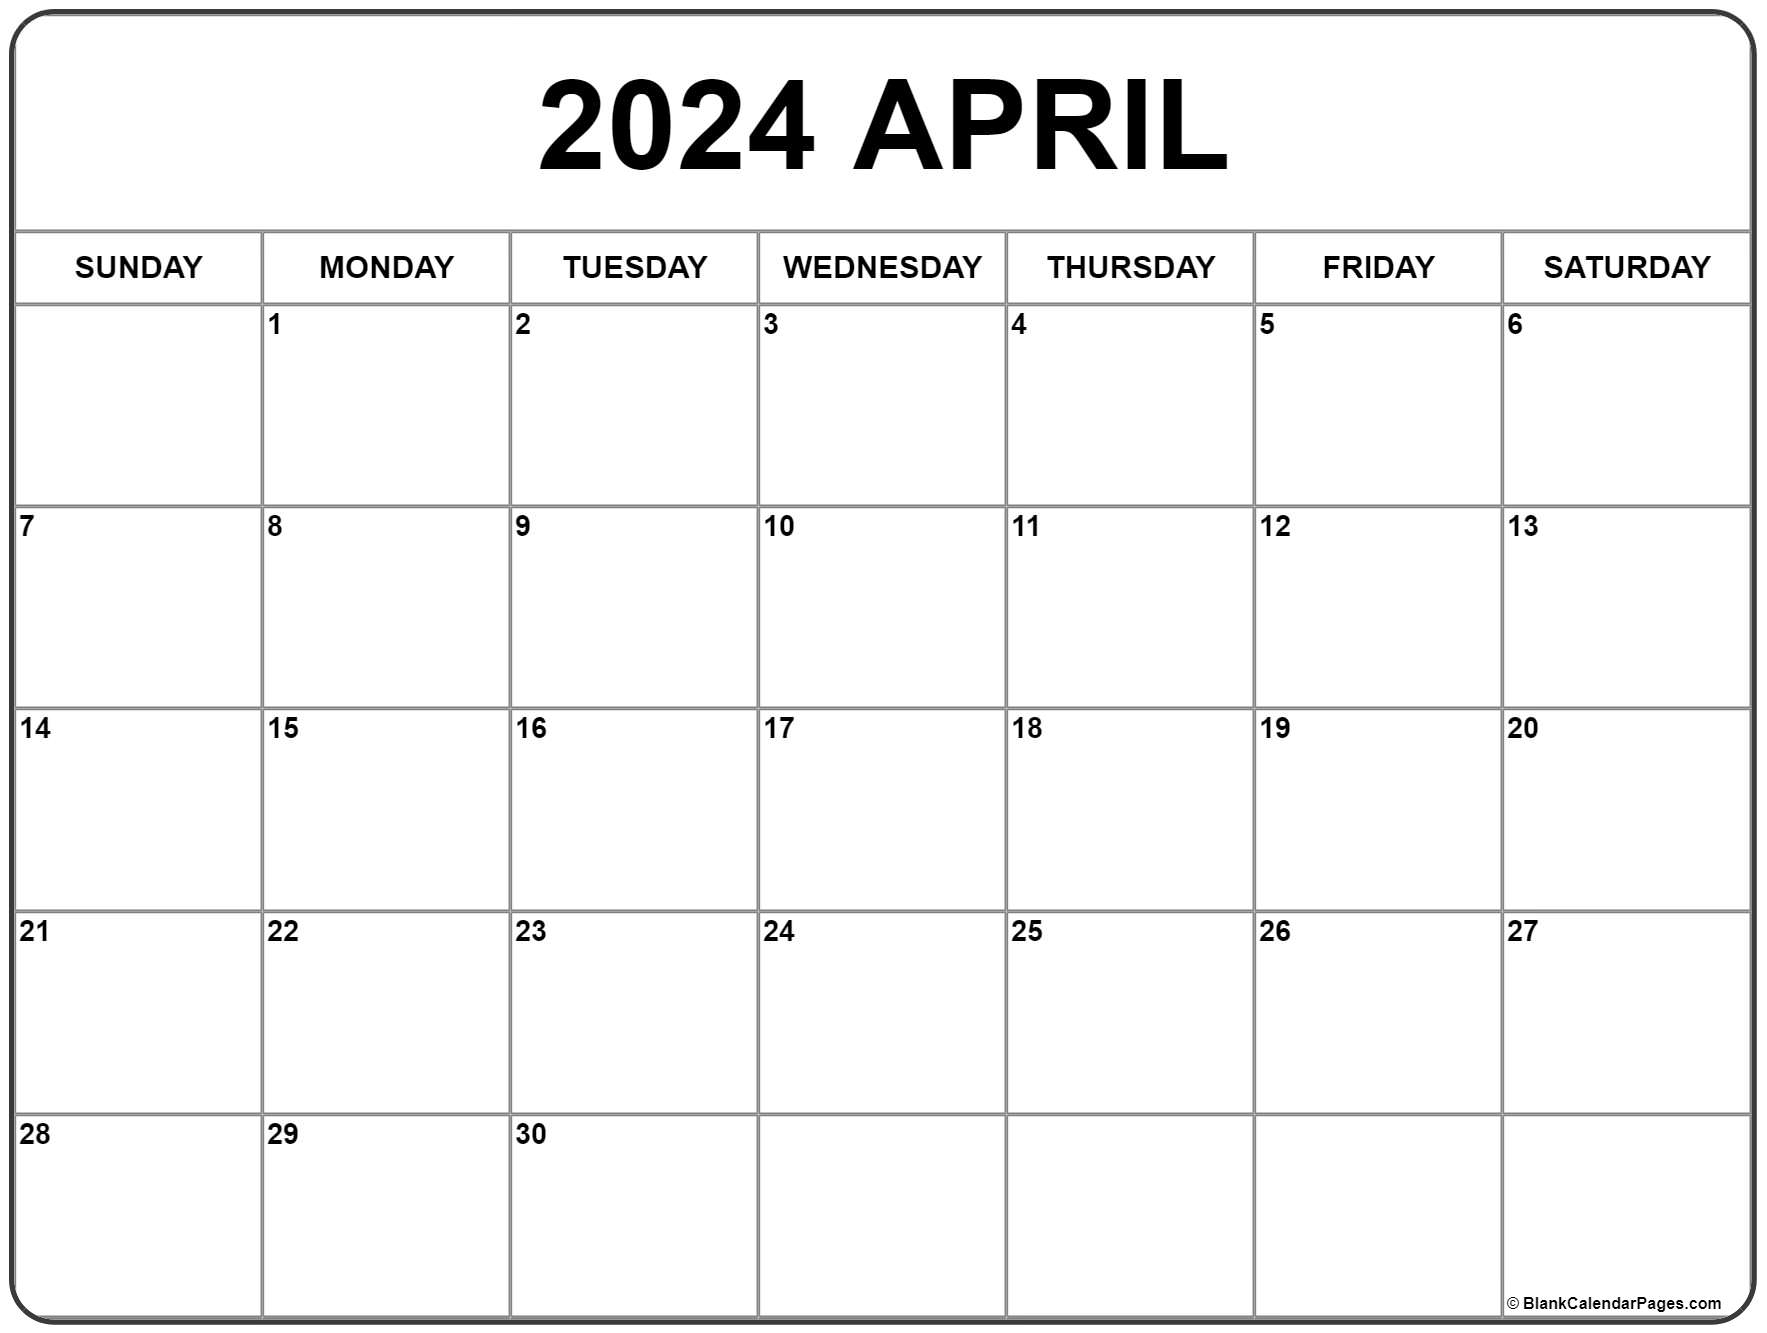 April 2024 Calendar | Free Printable Calendar for 2024 April Calendar Printable Free